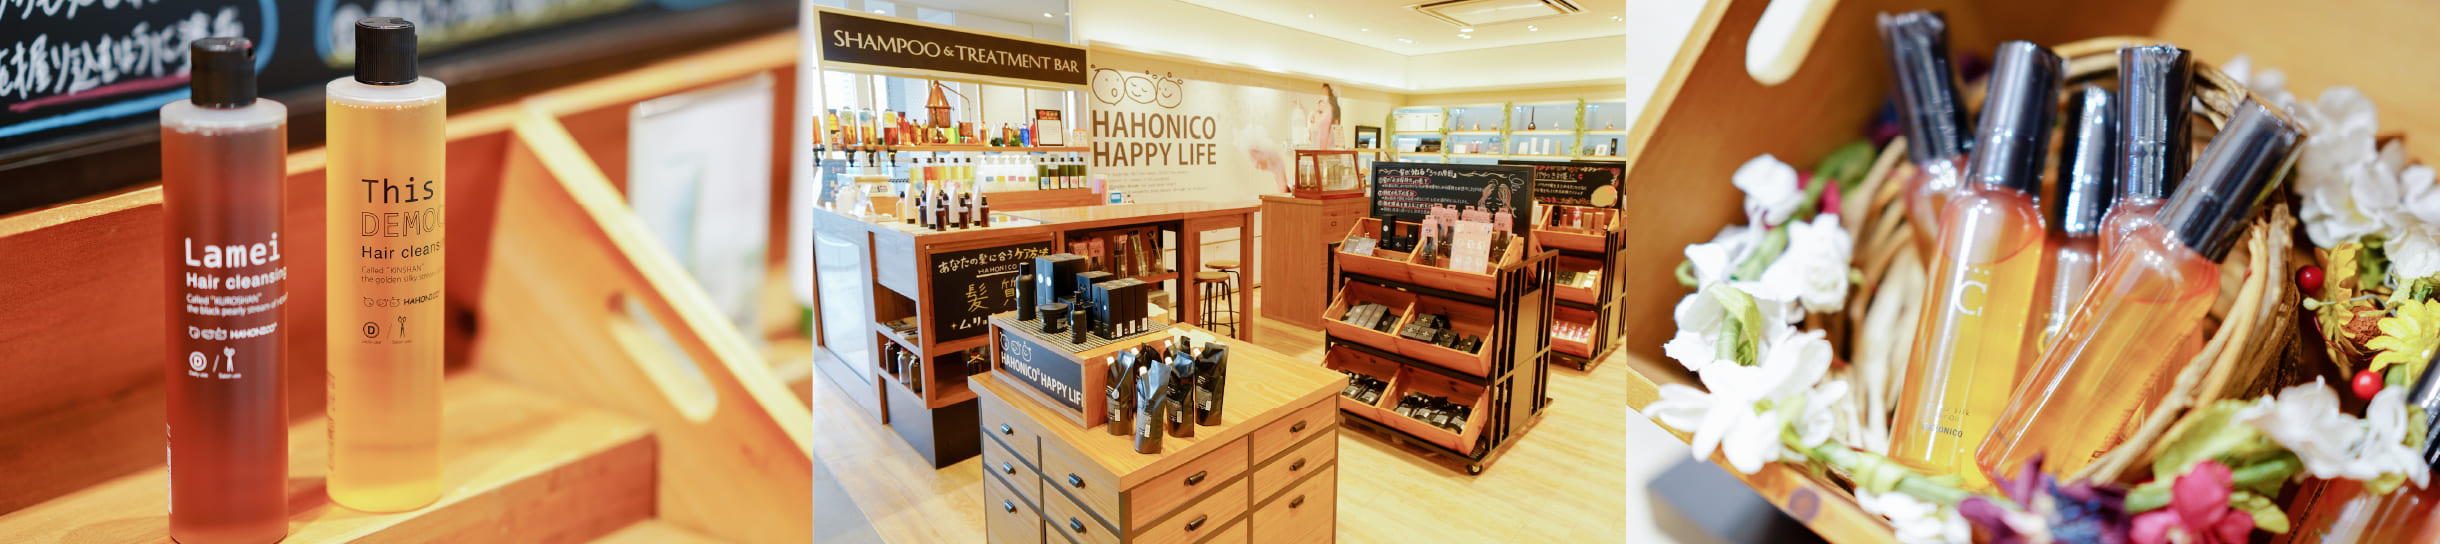 全国10,000店以上の美容室で人気のハホニコ商品をお買い求めいただける直営ショップ